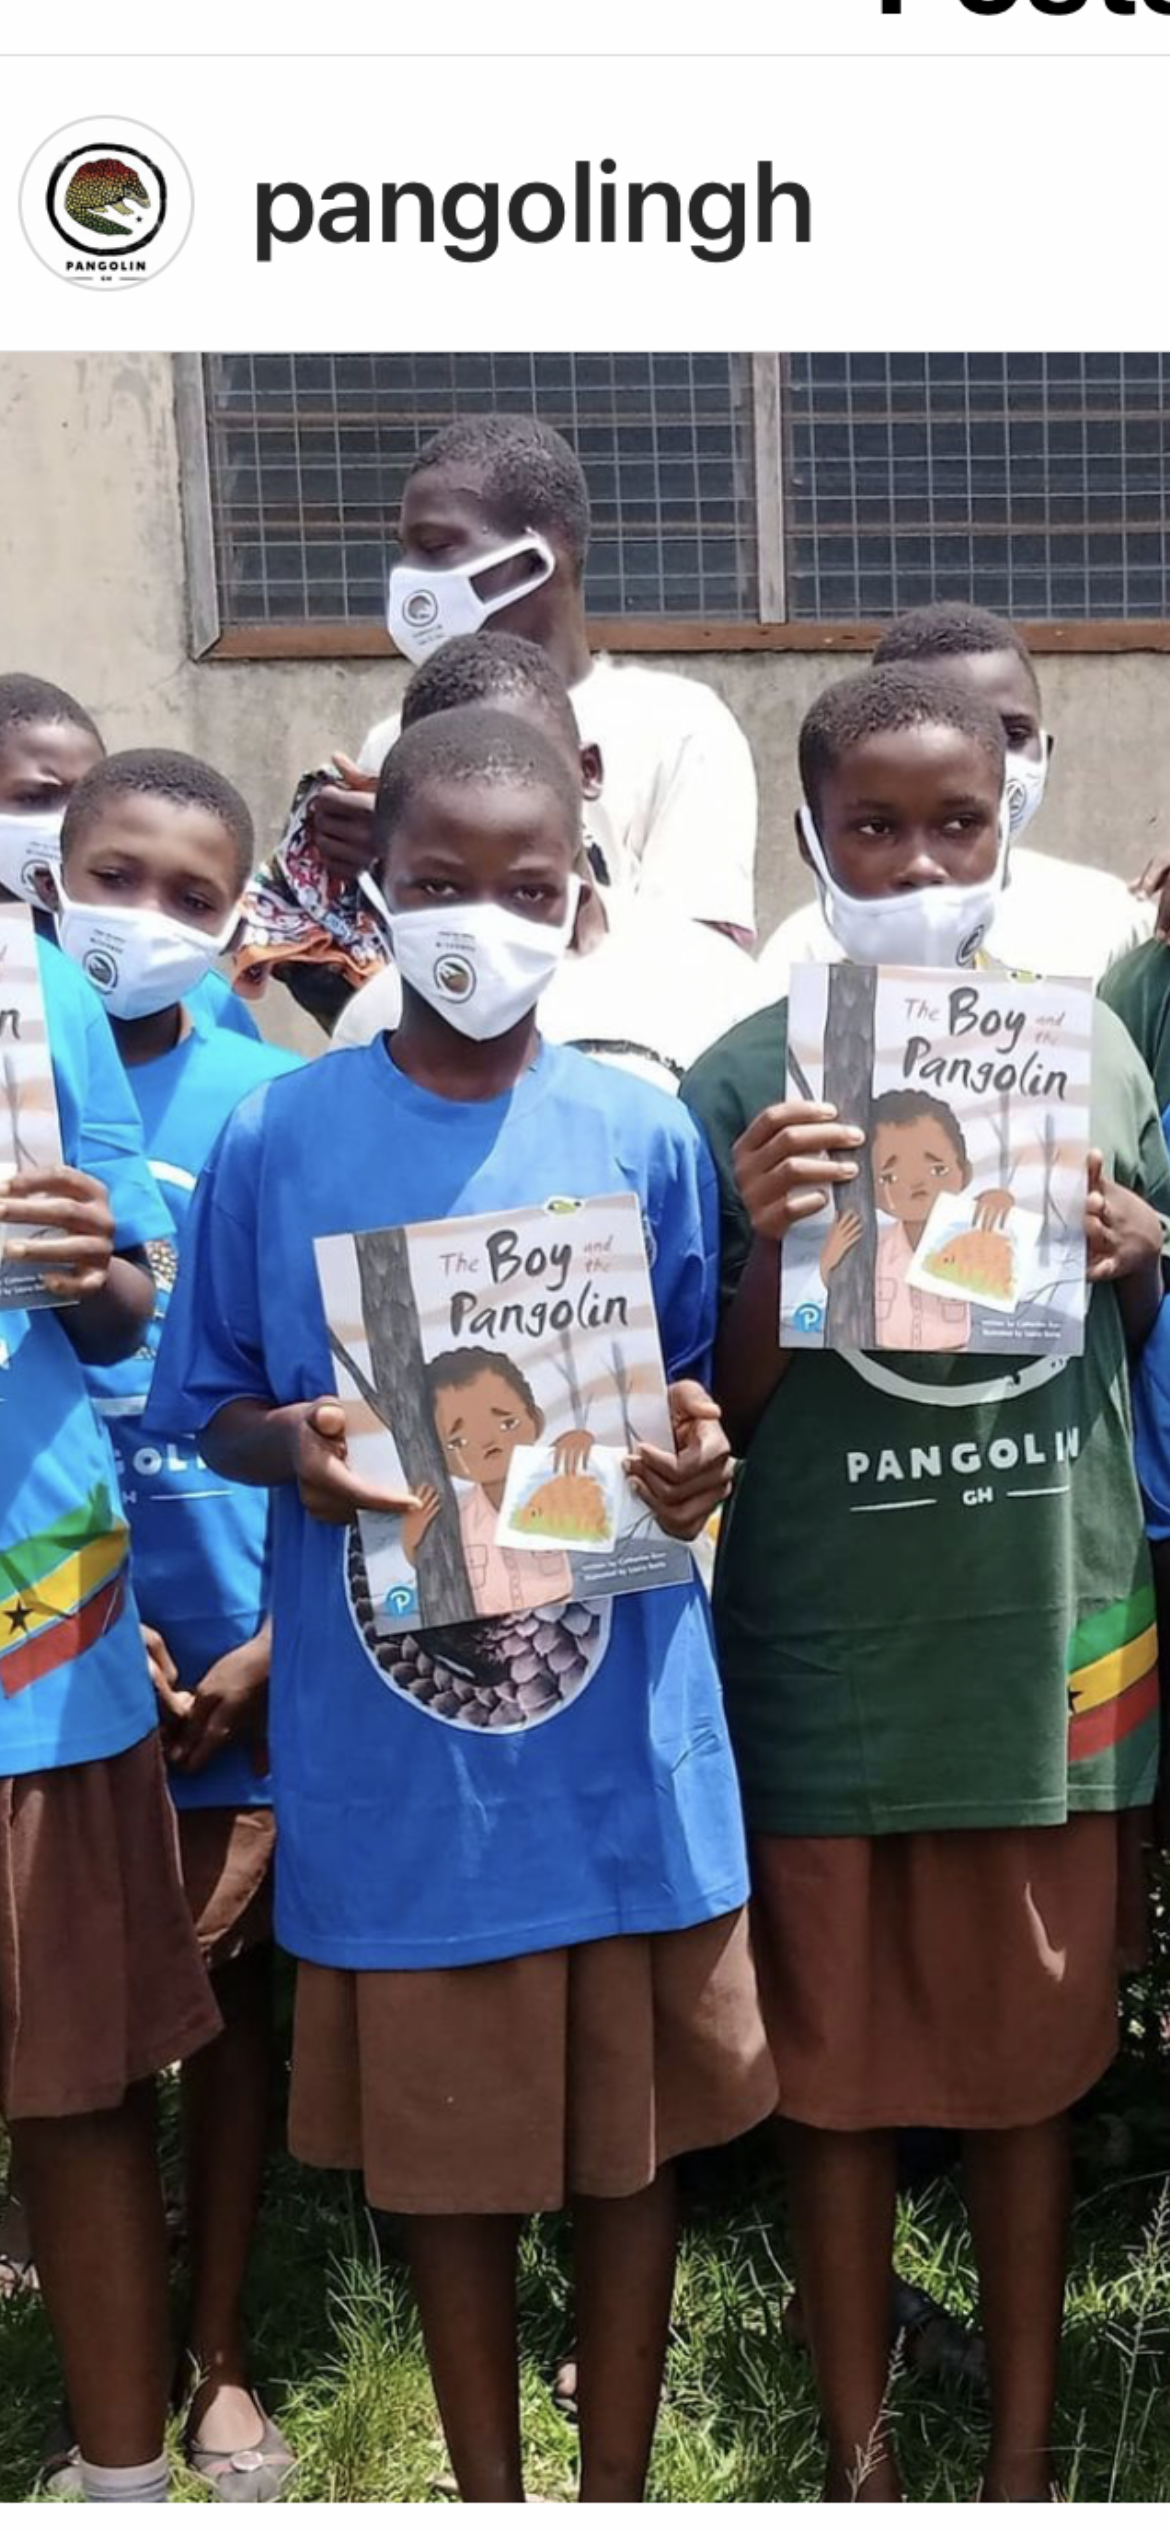 Children in Ghana holding a pangolin book